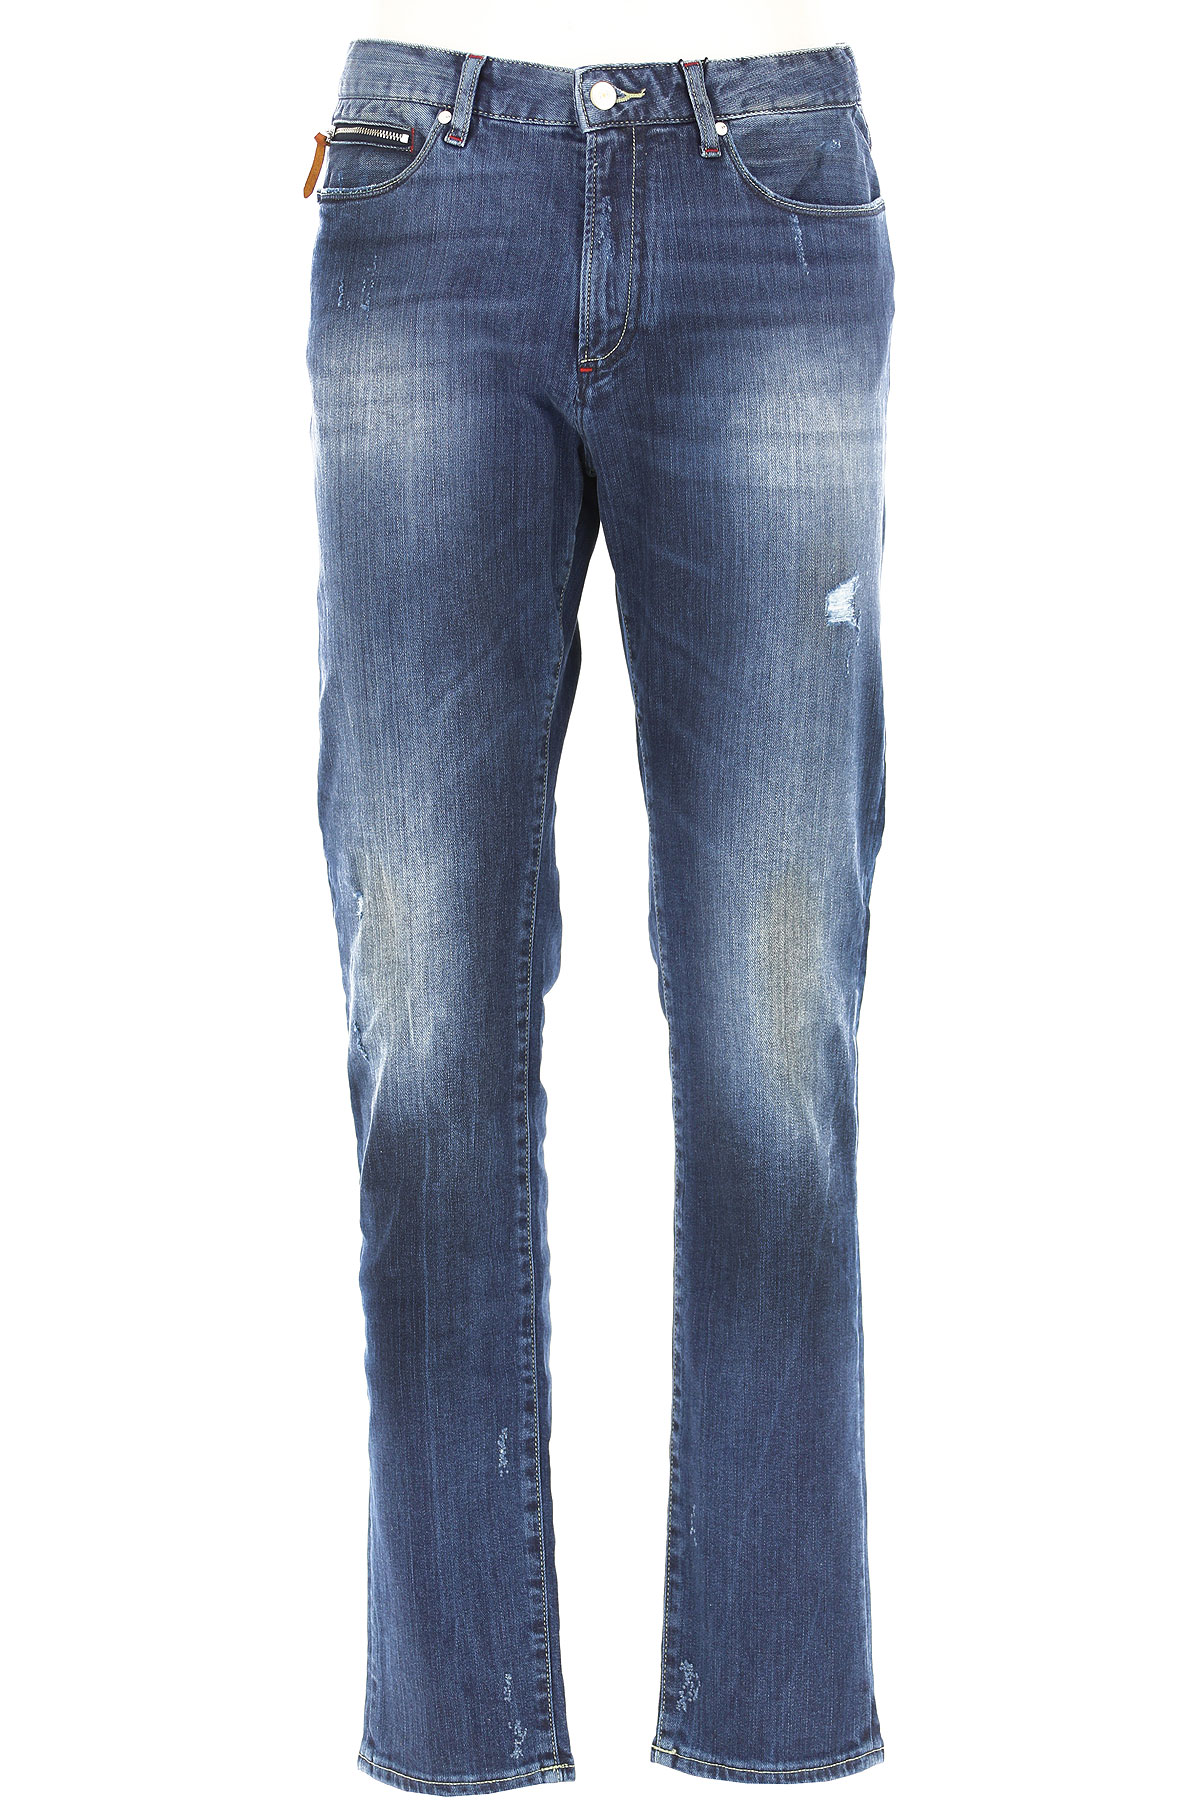 Emporio Armani Jeans, Bluejeans, Denim Jeans für Herren Günstig im Sale, Denim Mittelblau, Baumwolle, 2017, 46 48 49 50 52 54